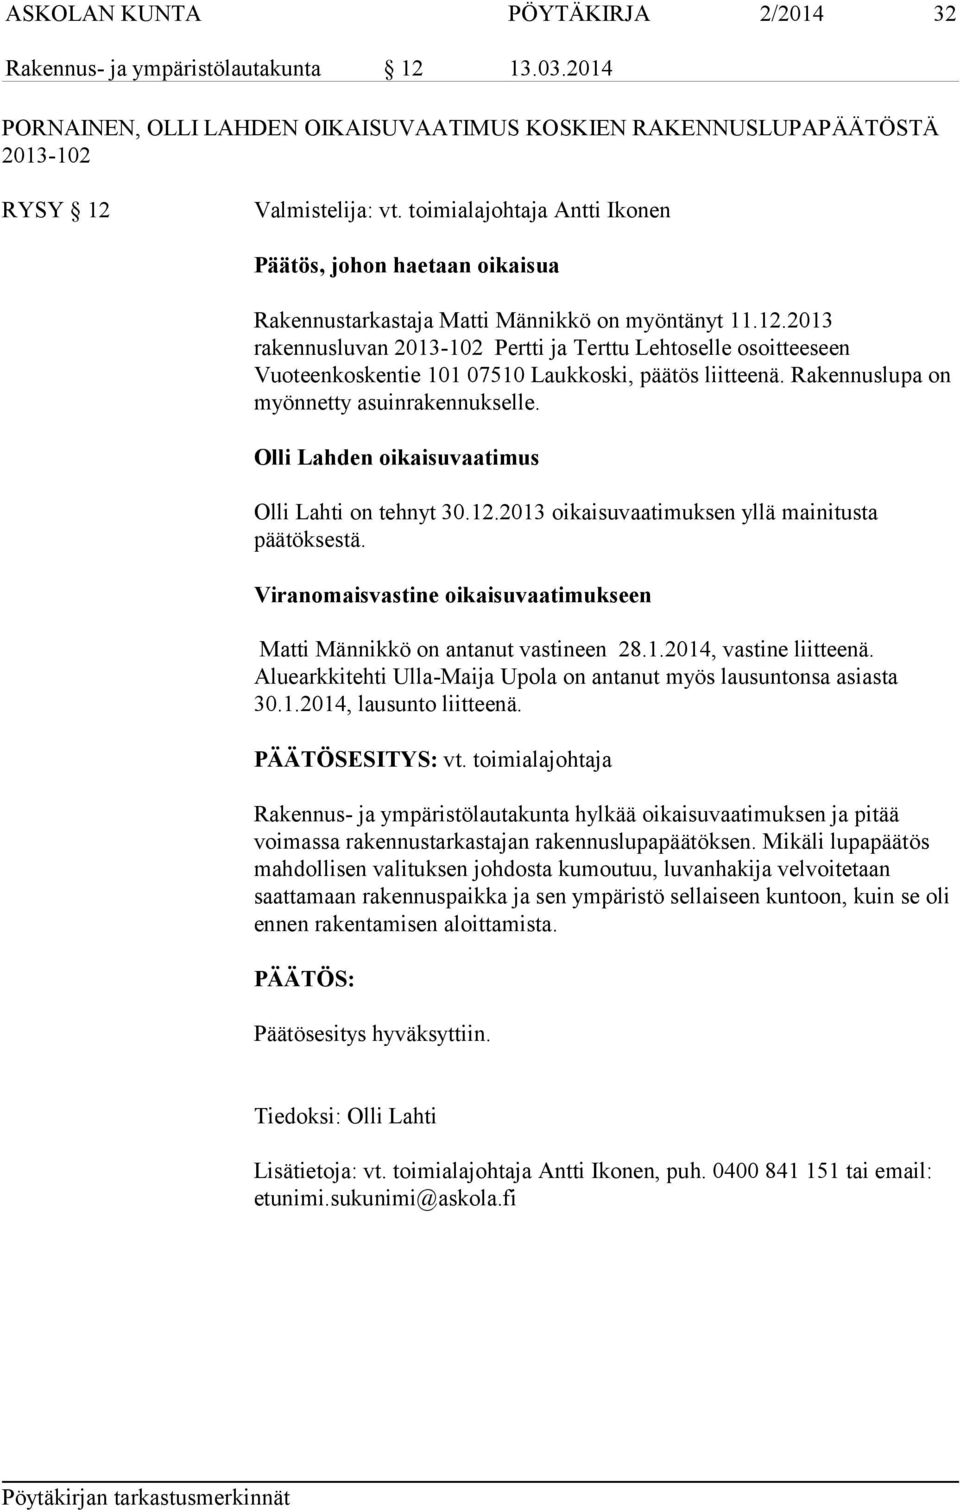 2013 rakennusluvan 2013-102 Pertti ja Terttu Lehtoselle osoitteeseen Vuoteenkoskentie 101 07510 Laukkoski, päätös liitteenä. Rakennuslupa on myönnetty asuinrakennukselle.